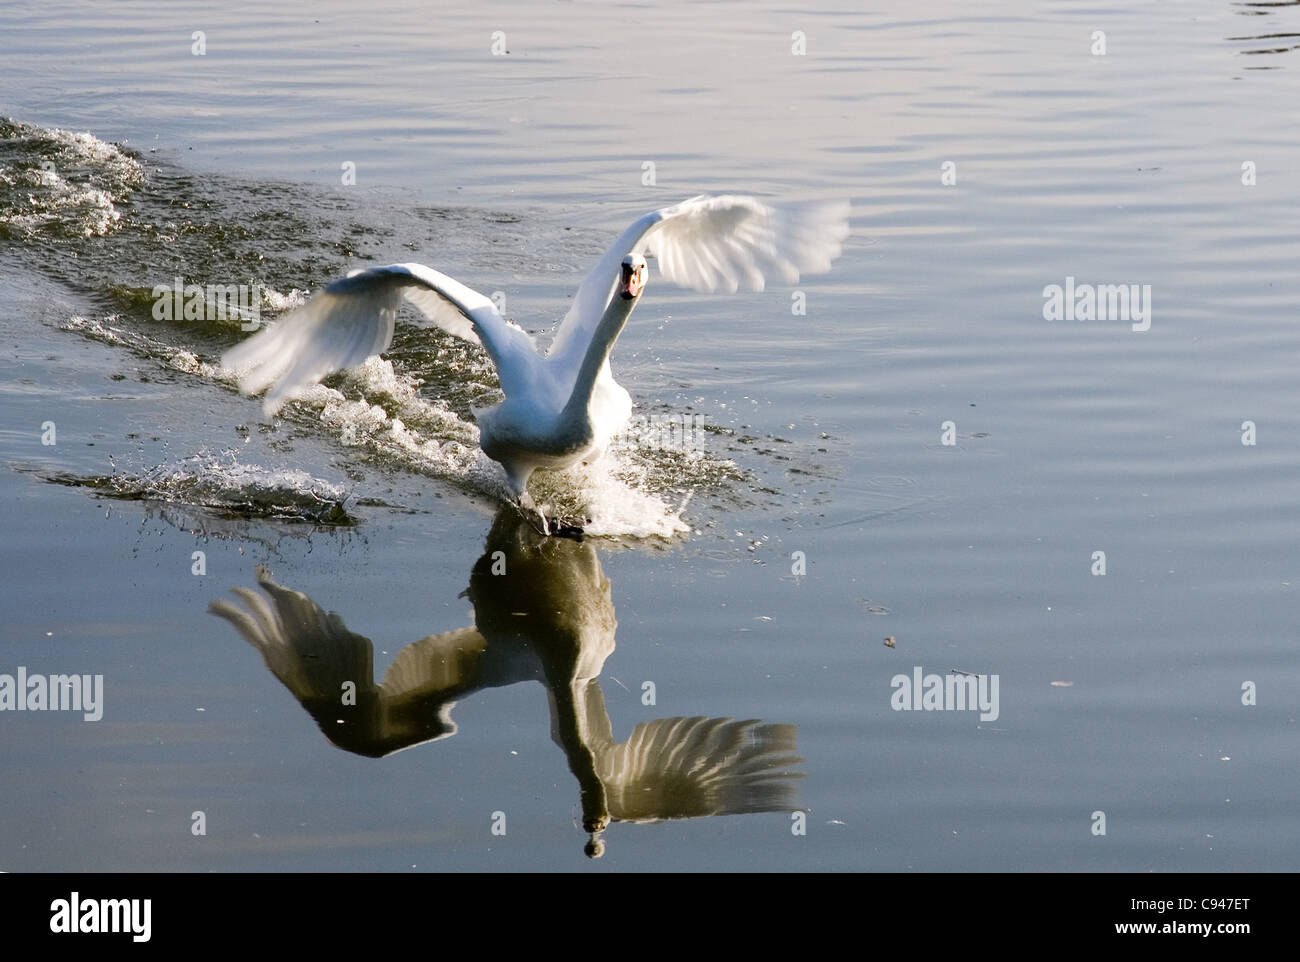 White swan landing on water Stock Photo